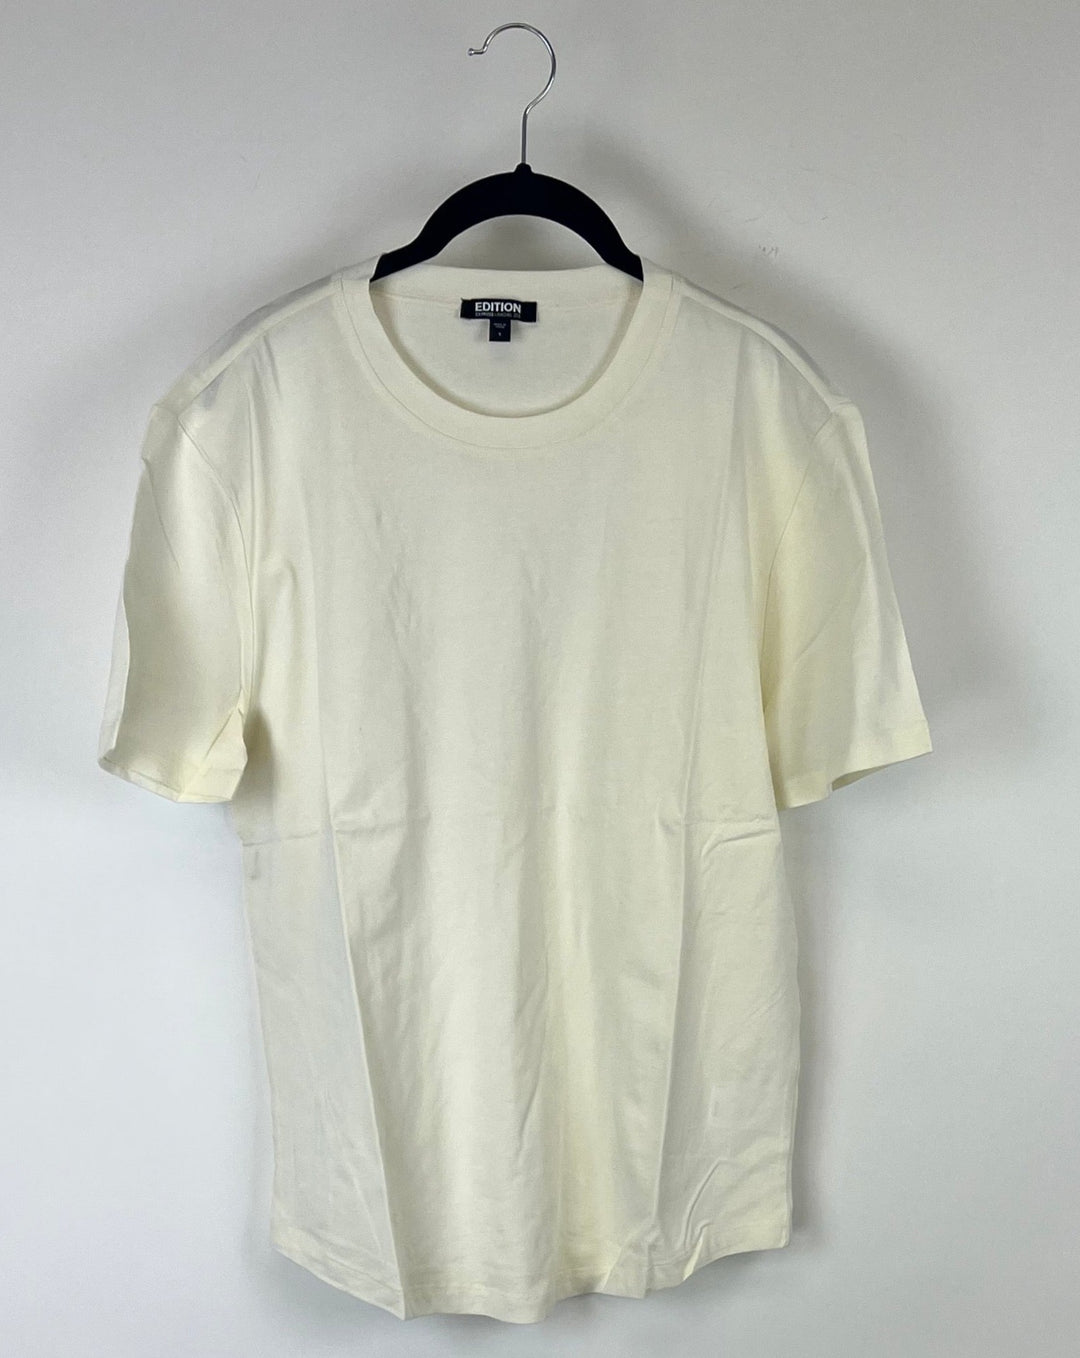 MENS Cream Short Sleeve Shirt - Extra Small, Small, Extra Extra Large